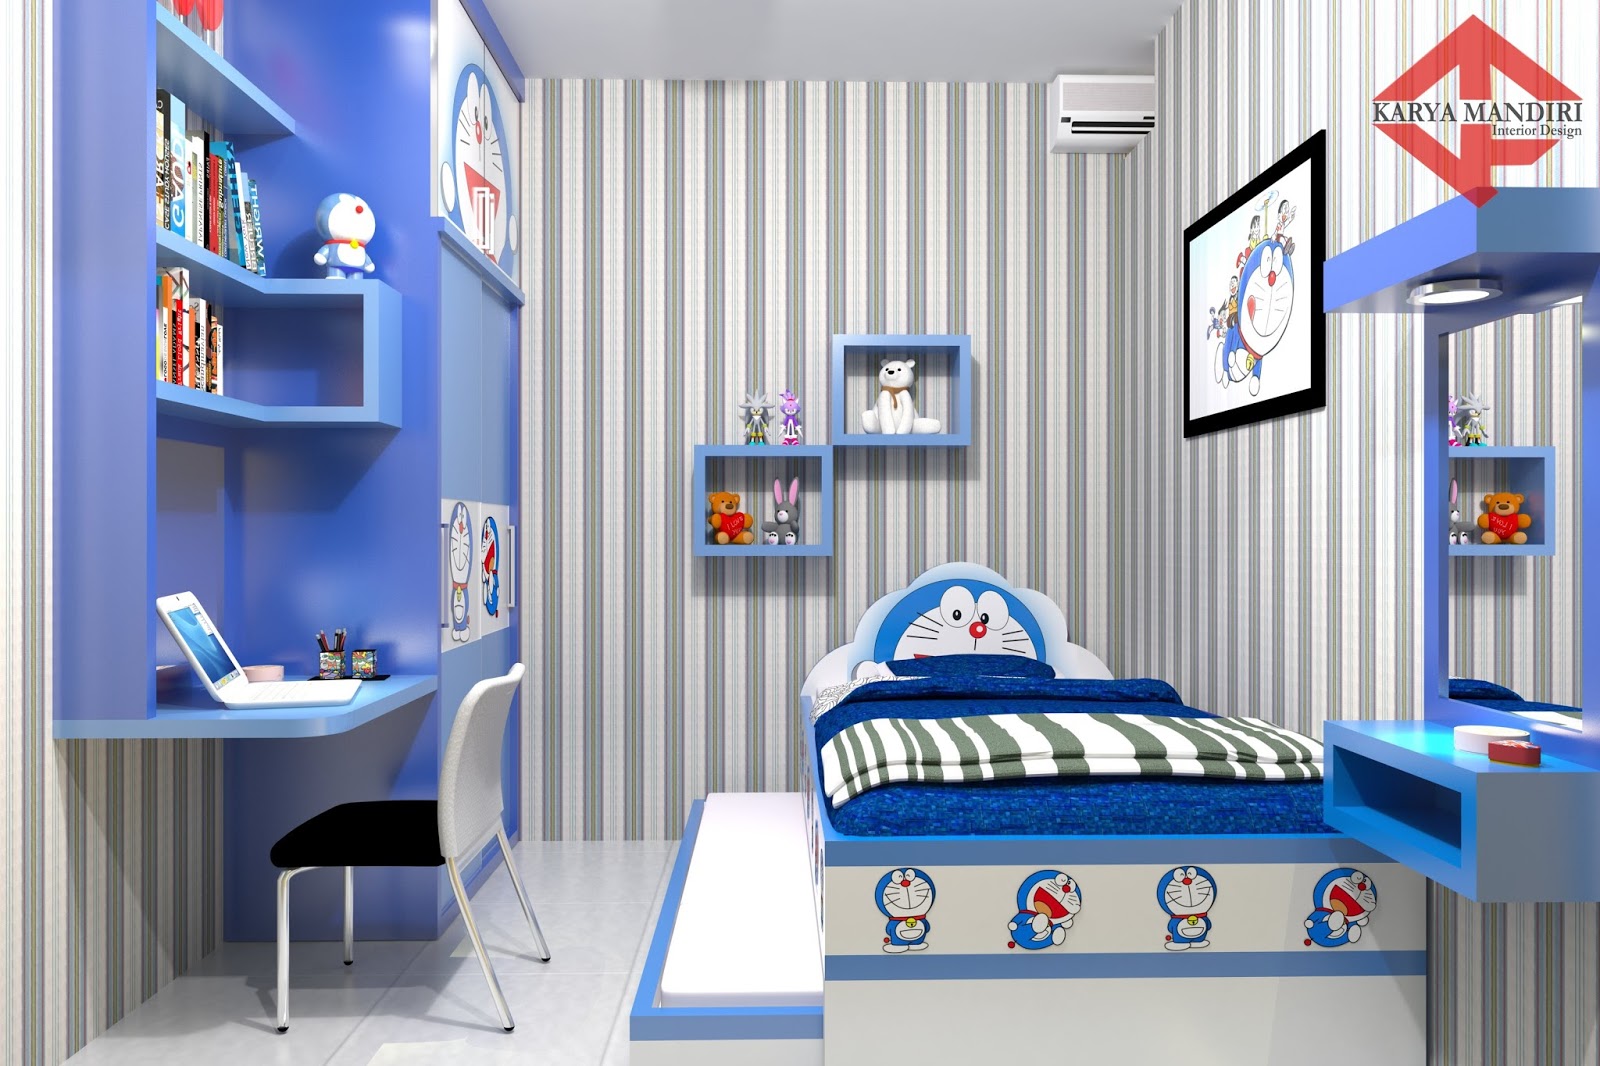  Dekorasi Kamar Tidur Tema Doraemon 